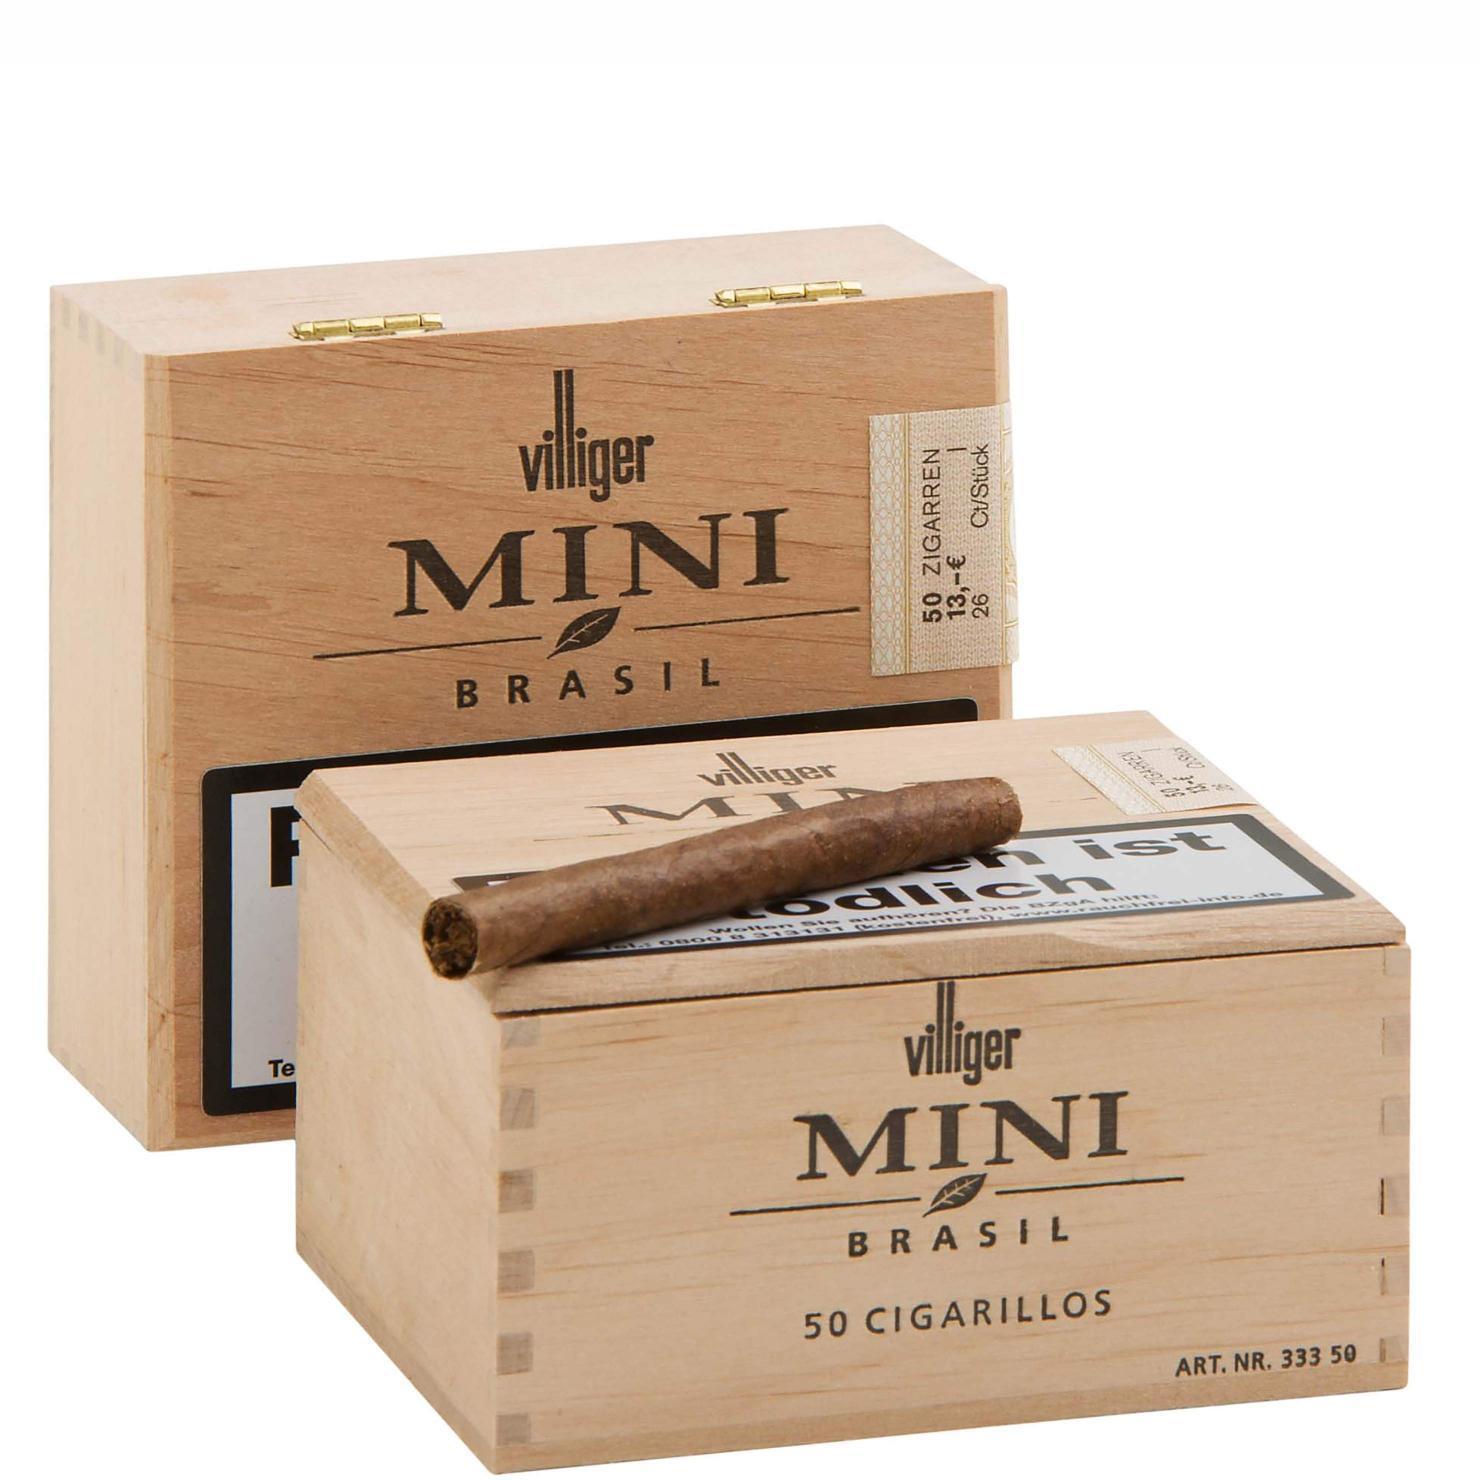 Villiger Mini Brasil 2 x 50 Zigarillos 1 x 50St Zigarren